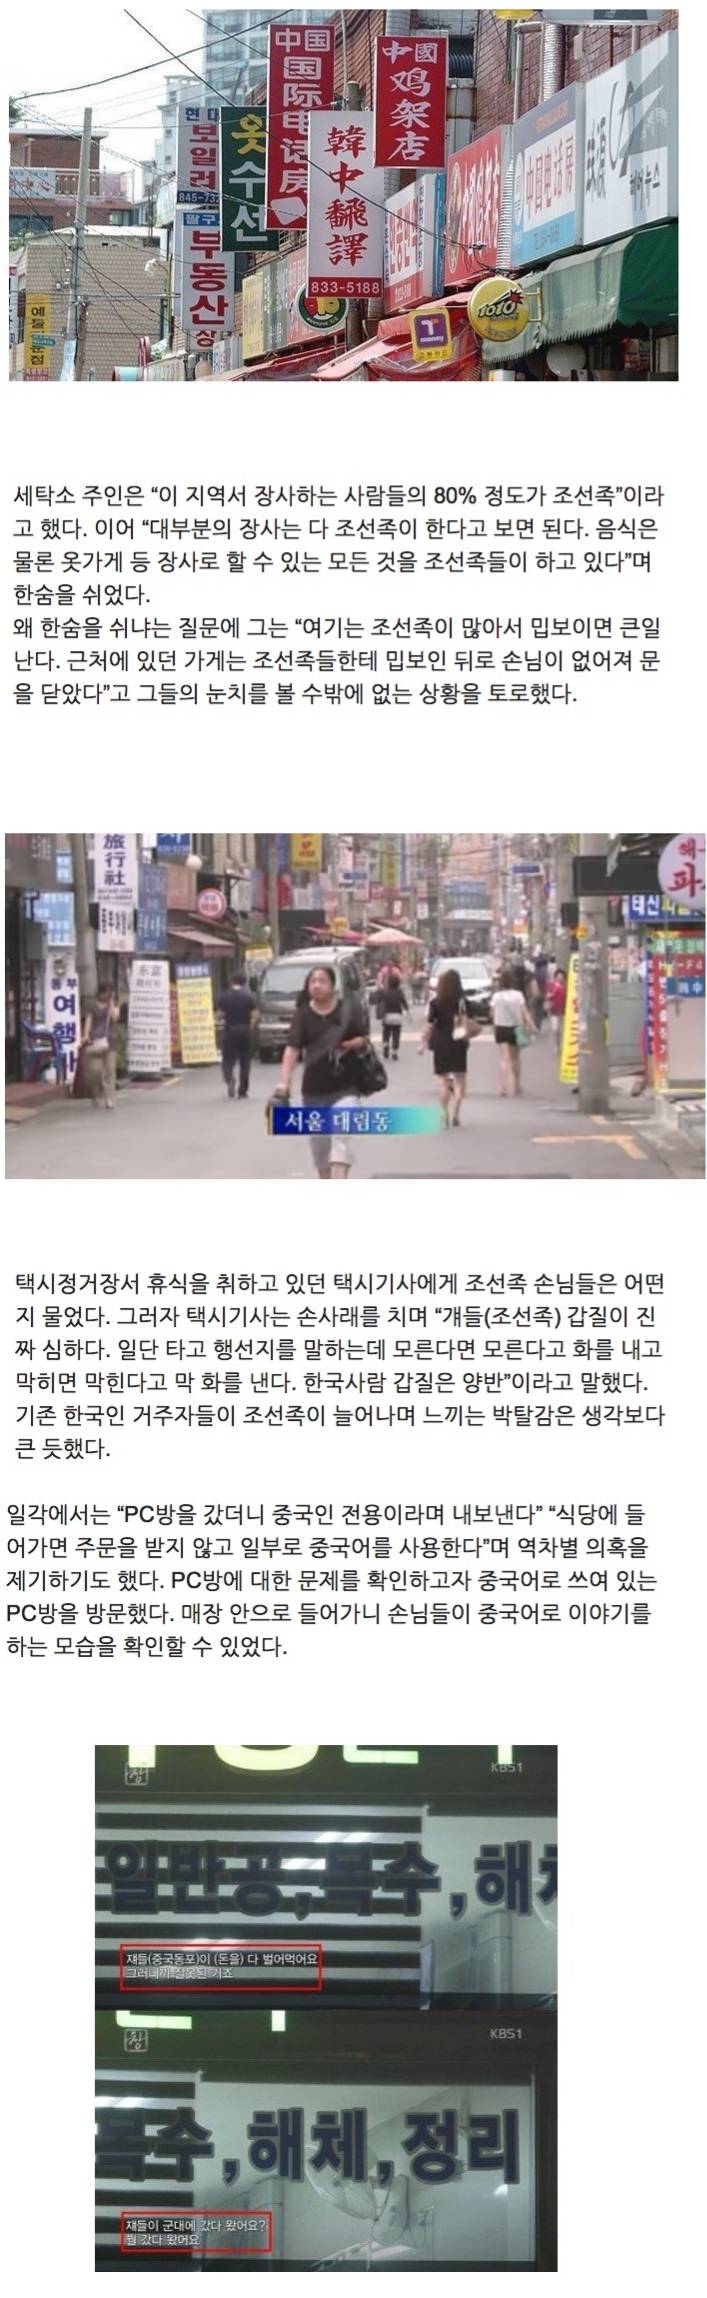 서울 조선족 동네의 한국인 역차별.jpg